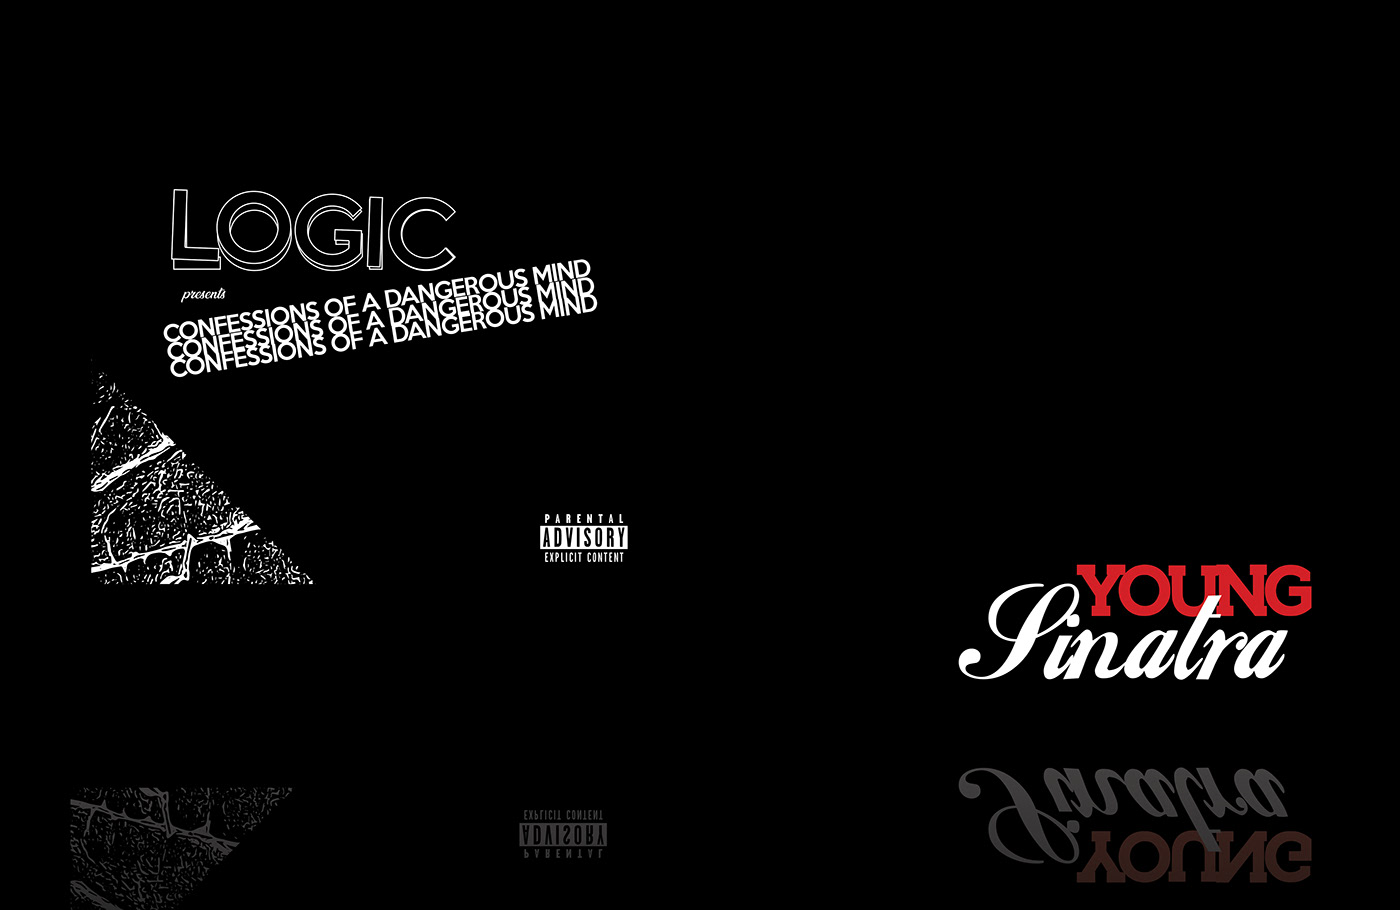 logic music Album cover design concept concepts music design artwork